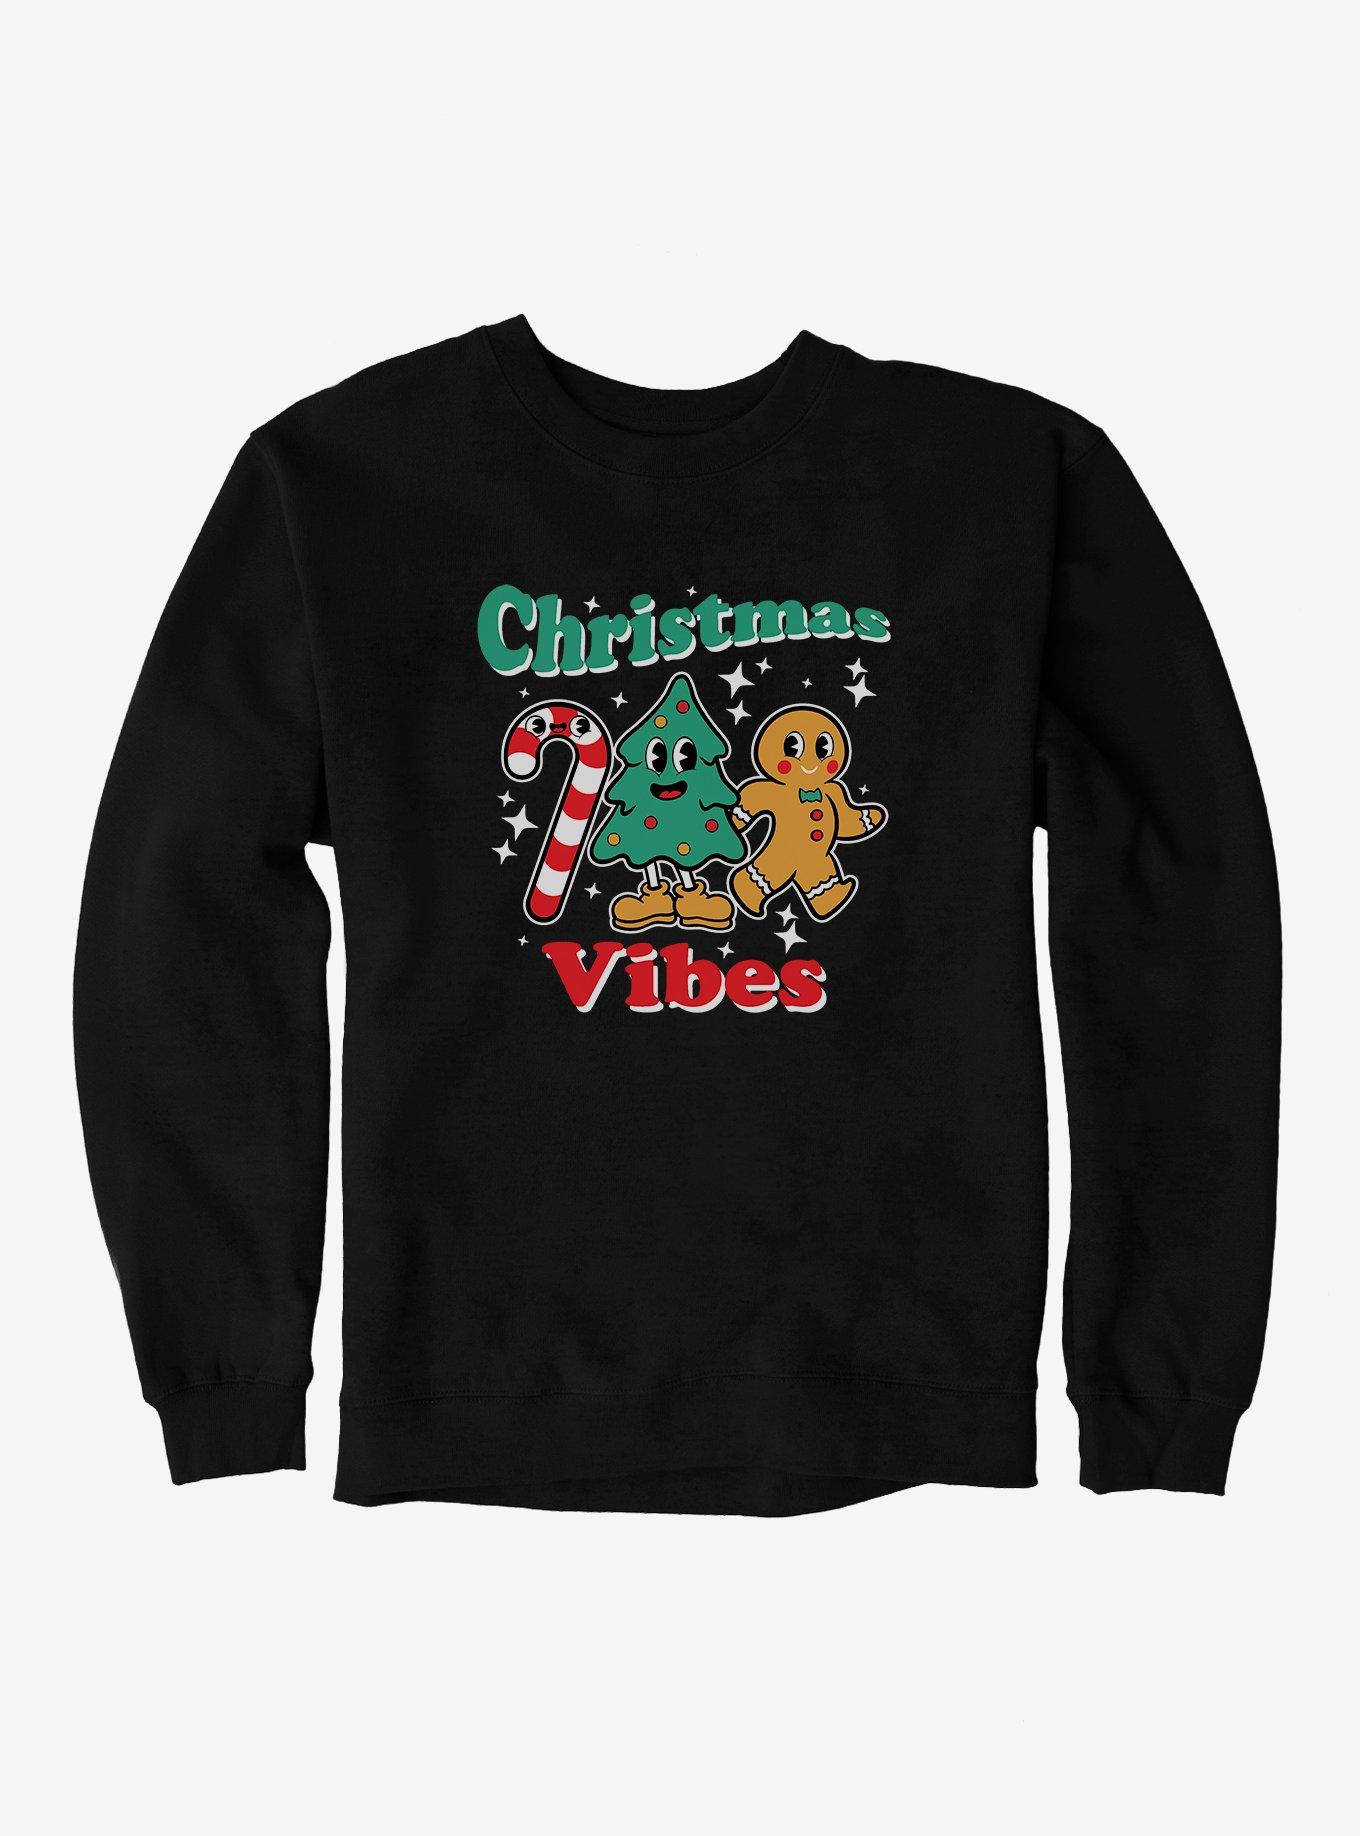 Hot Topic Christmas Vibes Sweatshirt